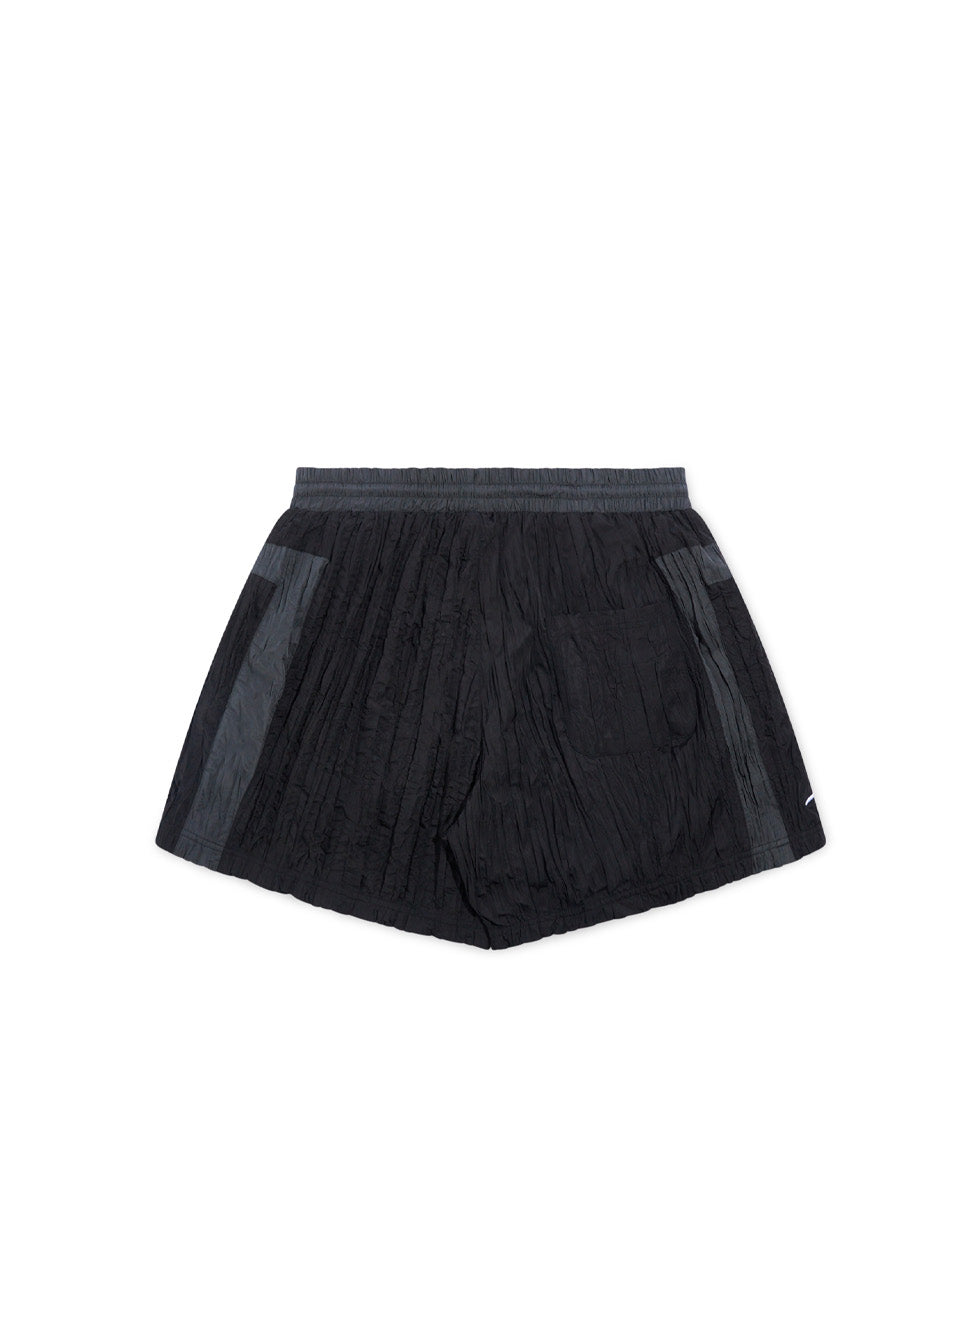 Crinkled Nylon Shorts - Black/Grey